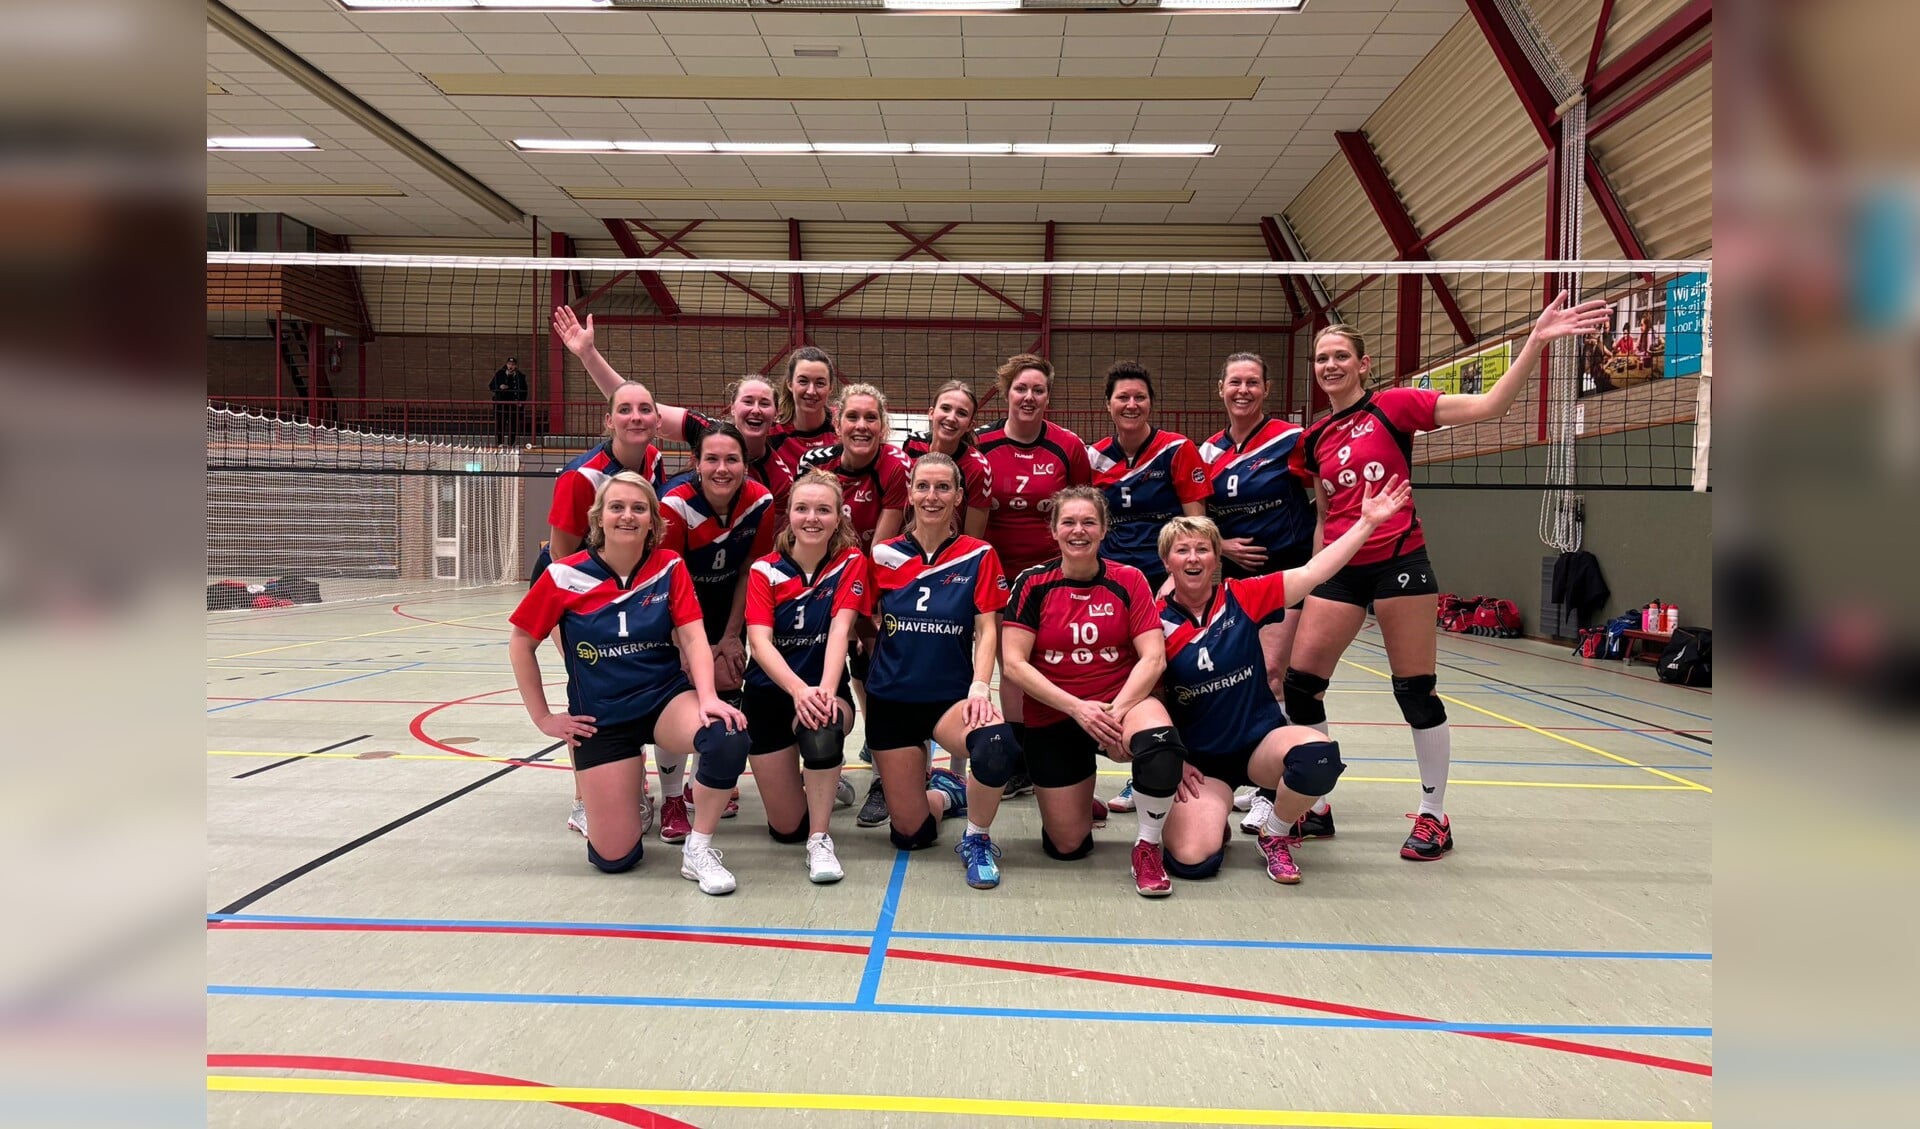 De teams van SNVV uit Sint Nicolaasga en LVC Lemmer spelen tegen elkaar in de mastercompetitie.